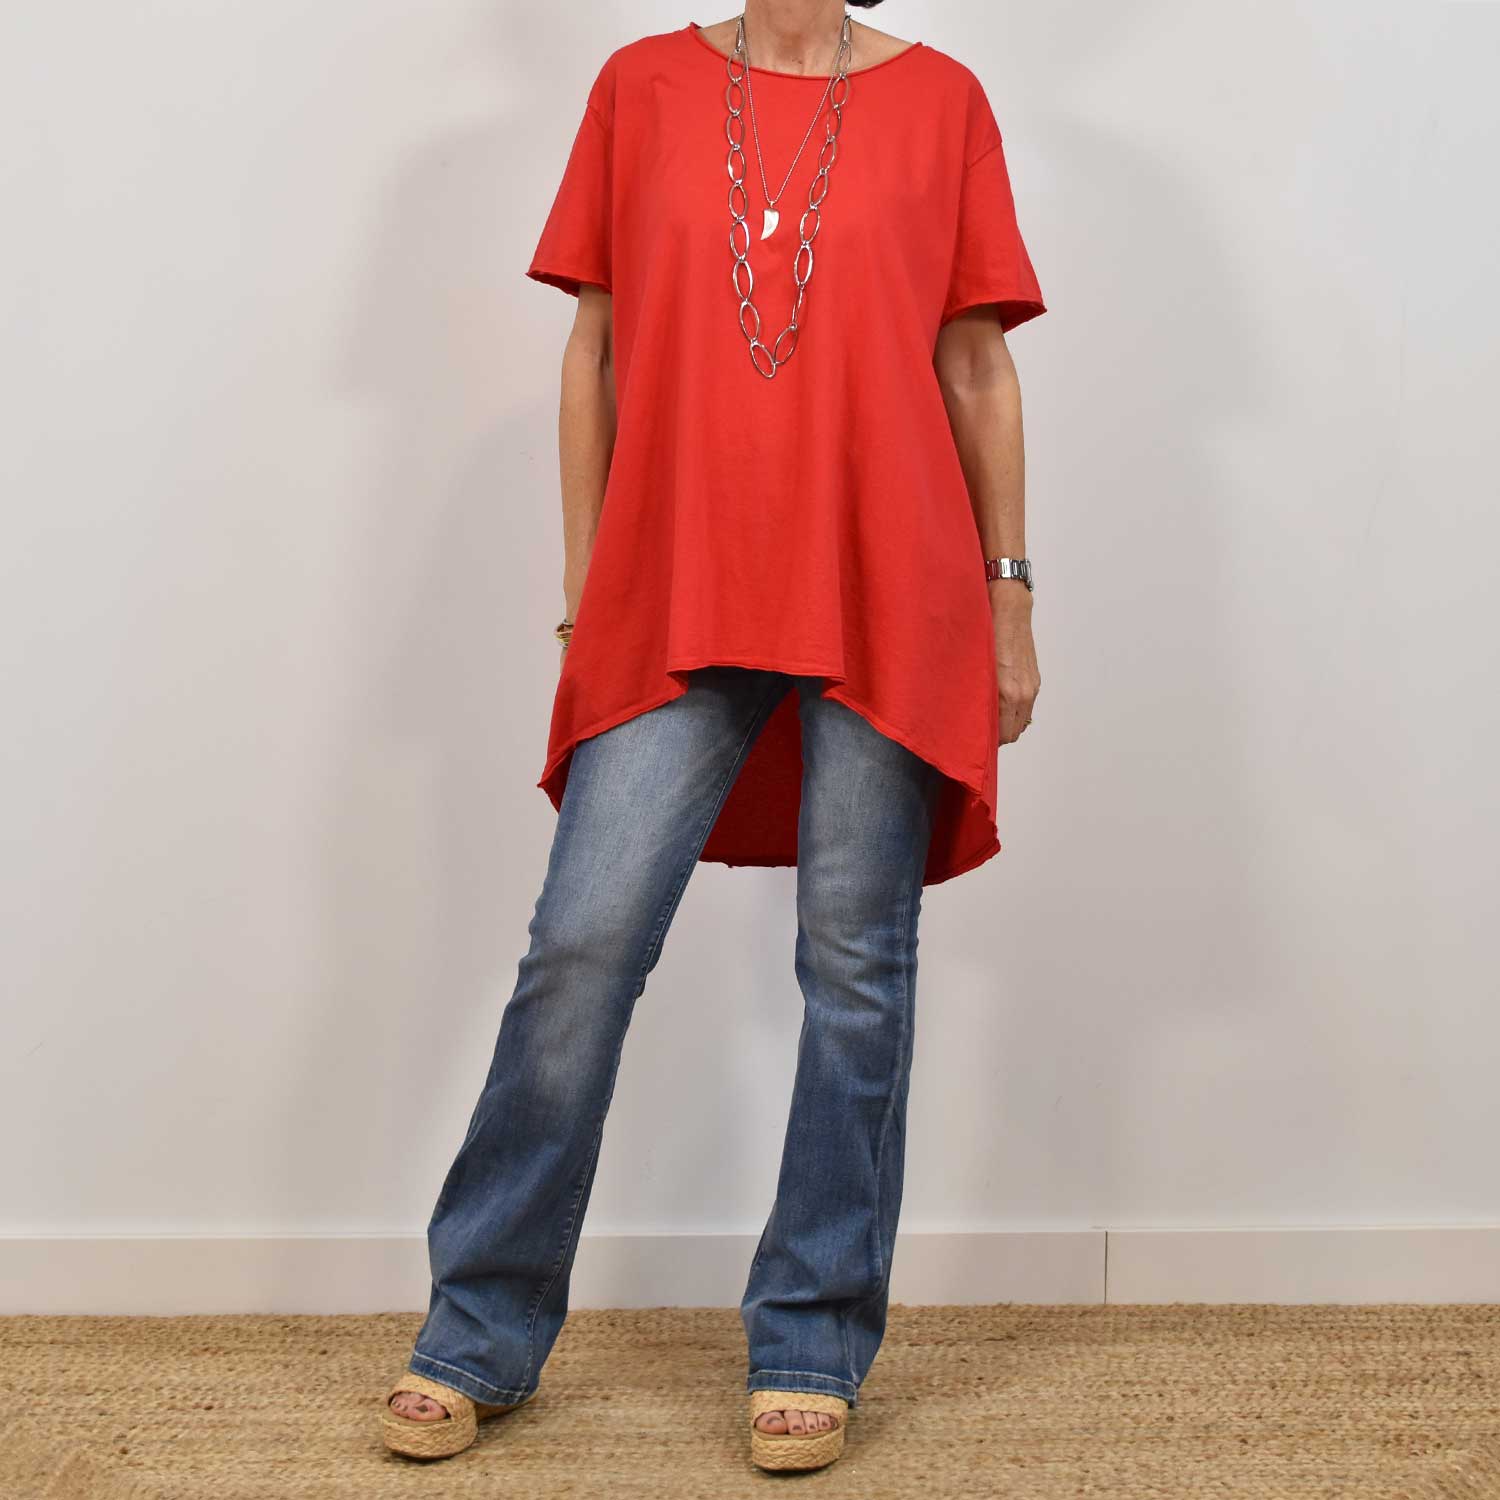 Camiseta asimétrica manga corta roja